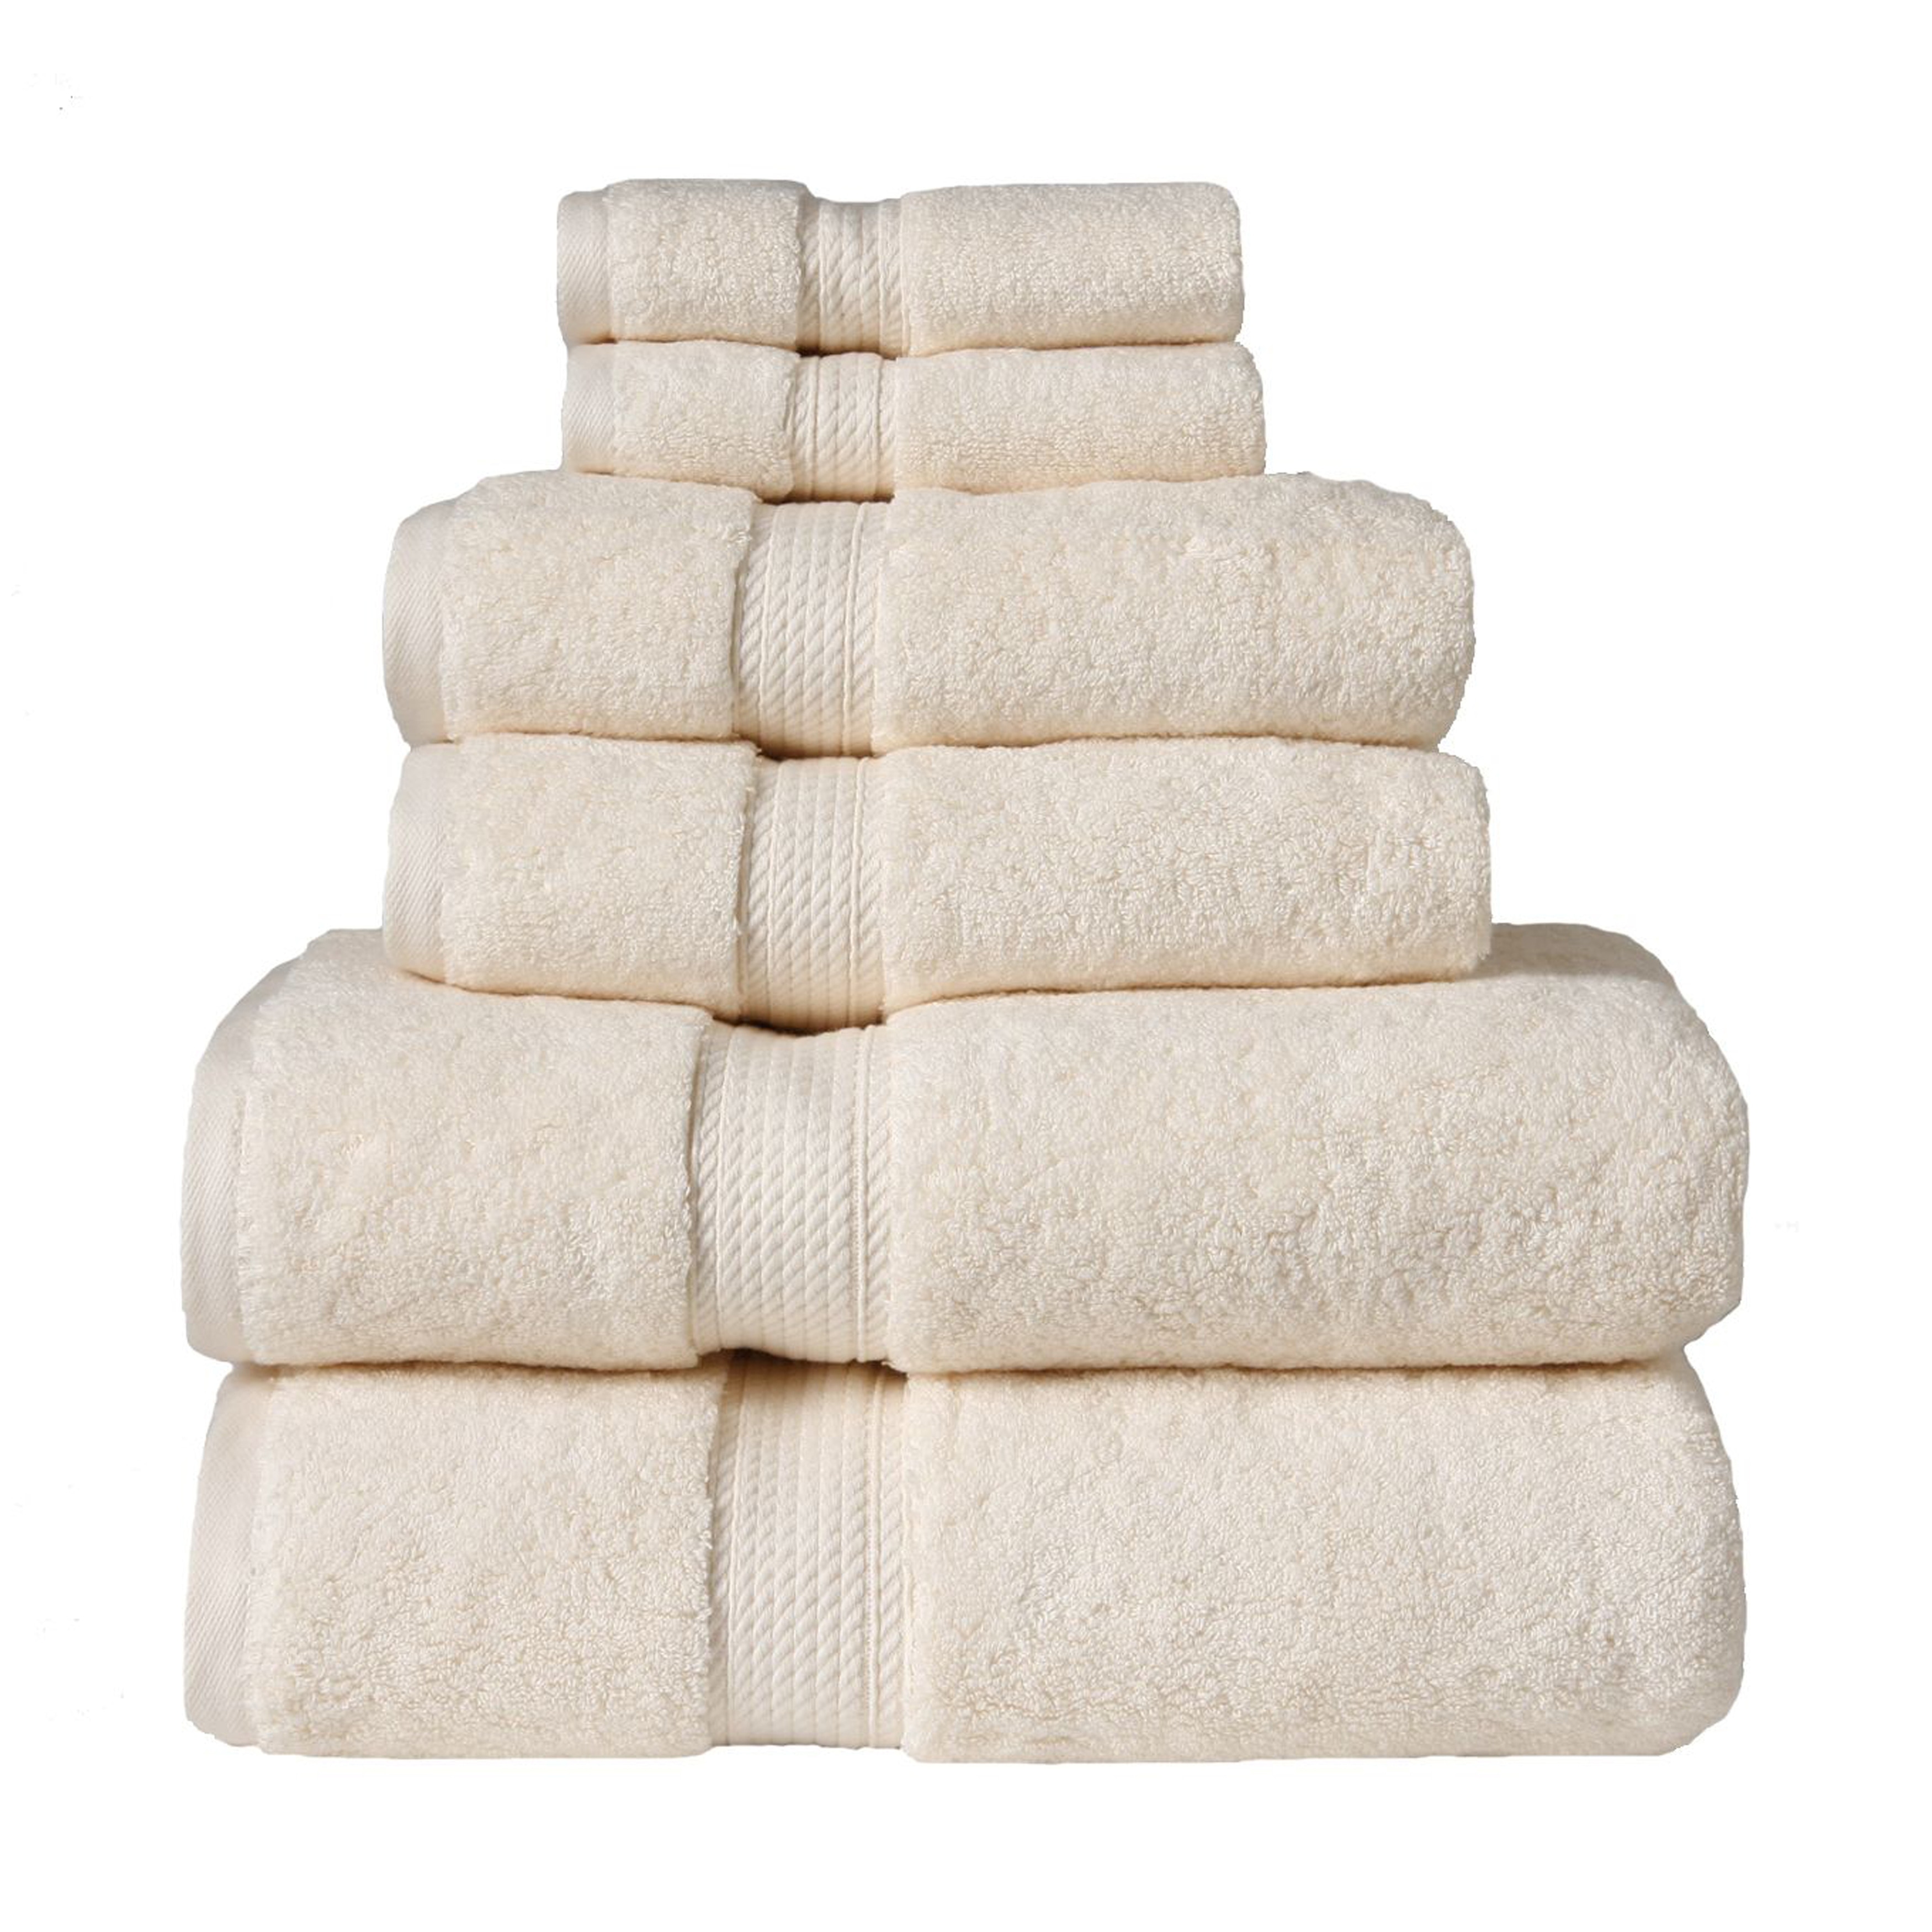 Хлопчатобумажное полотенце. Полотенца фирмы Indus Home Supreme Towels. Перфект хоум Египетский коттон полотенца. Полотенце Египетский хлопок. Полотенце тонкое хлопковое.